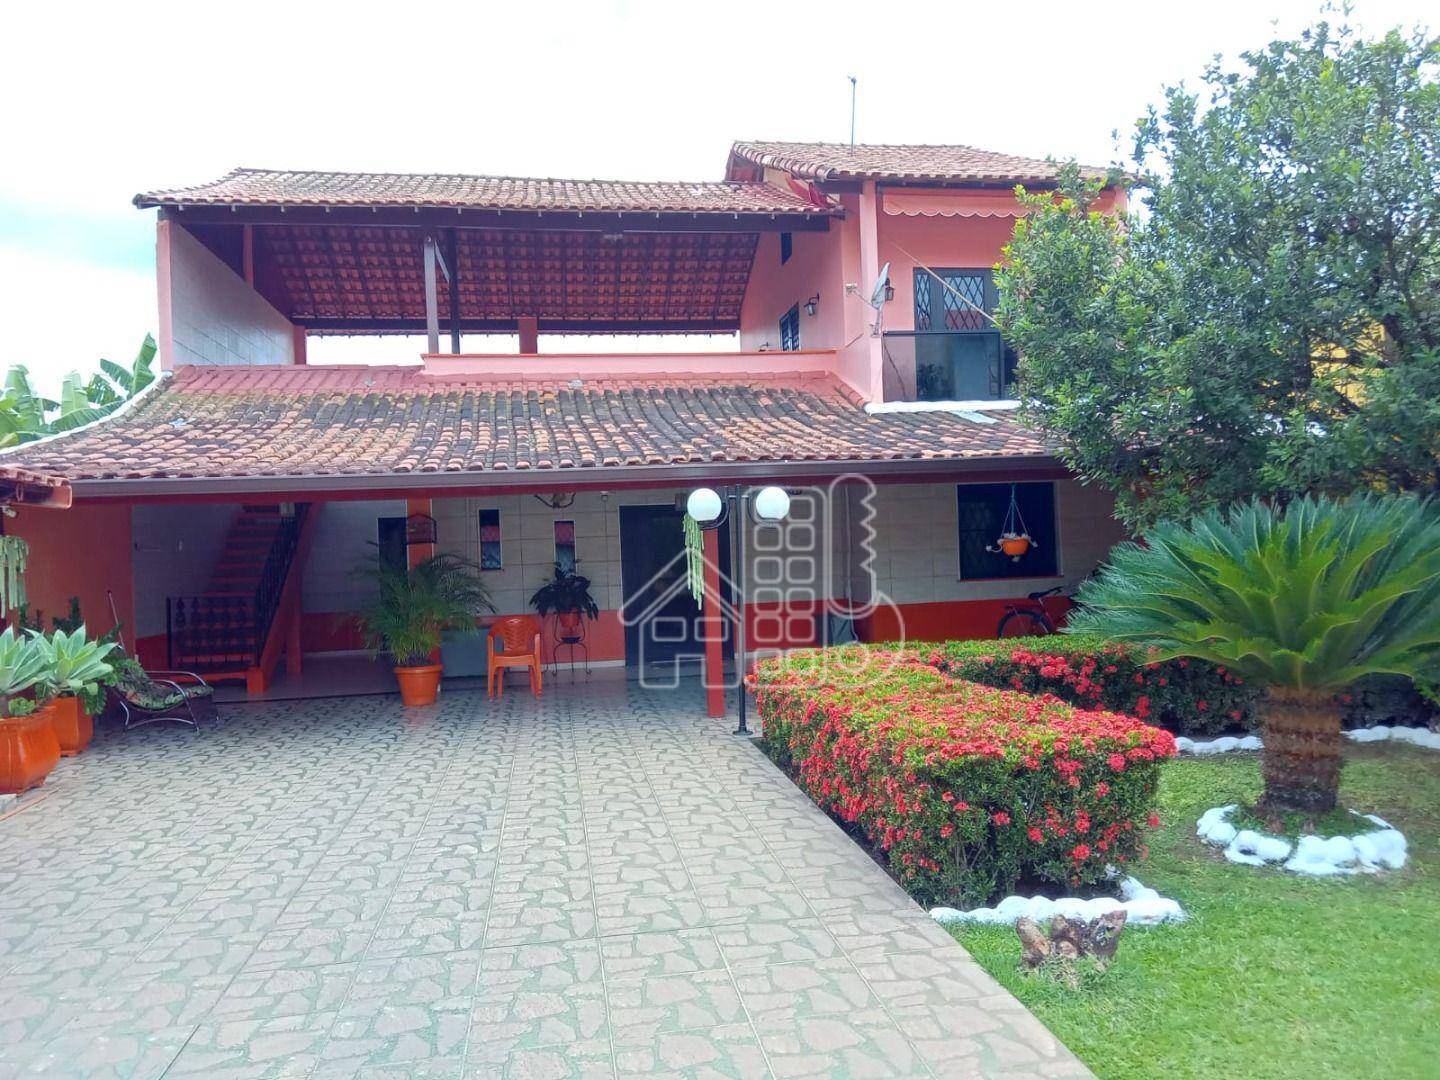 Casa com 3 quartos à venda, 85 m² por R$ 550.000 - São José do Imbassaí - Maricá/RJ